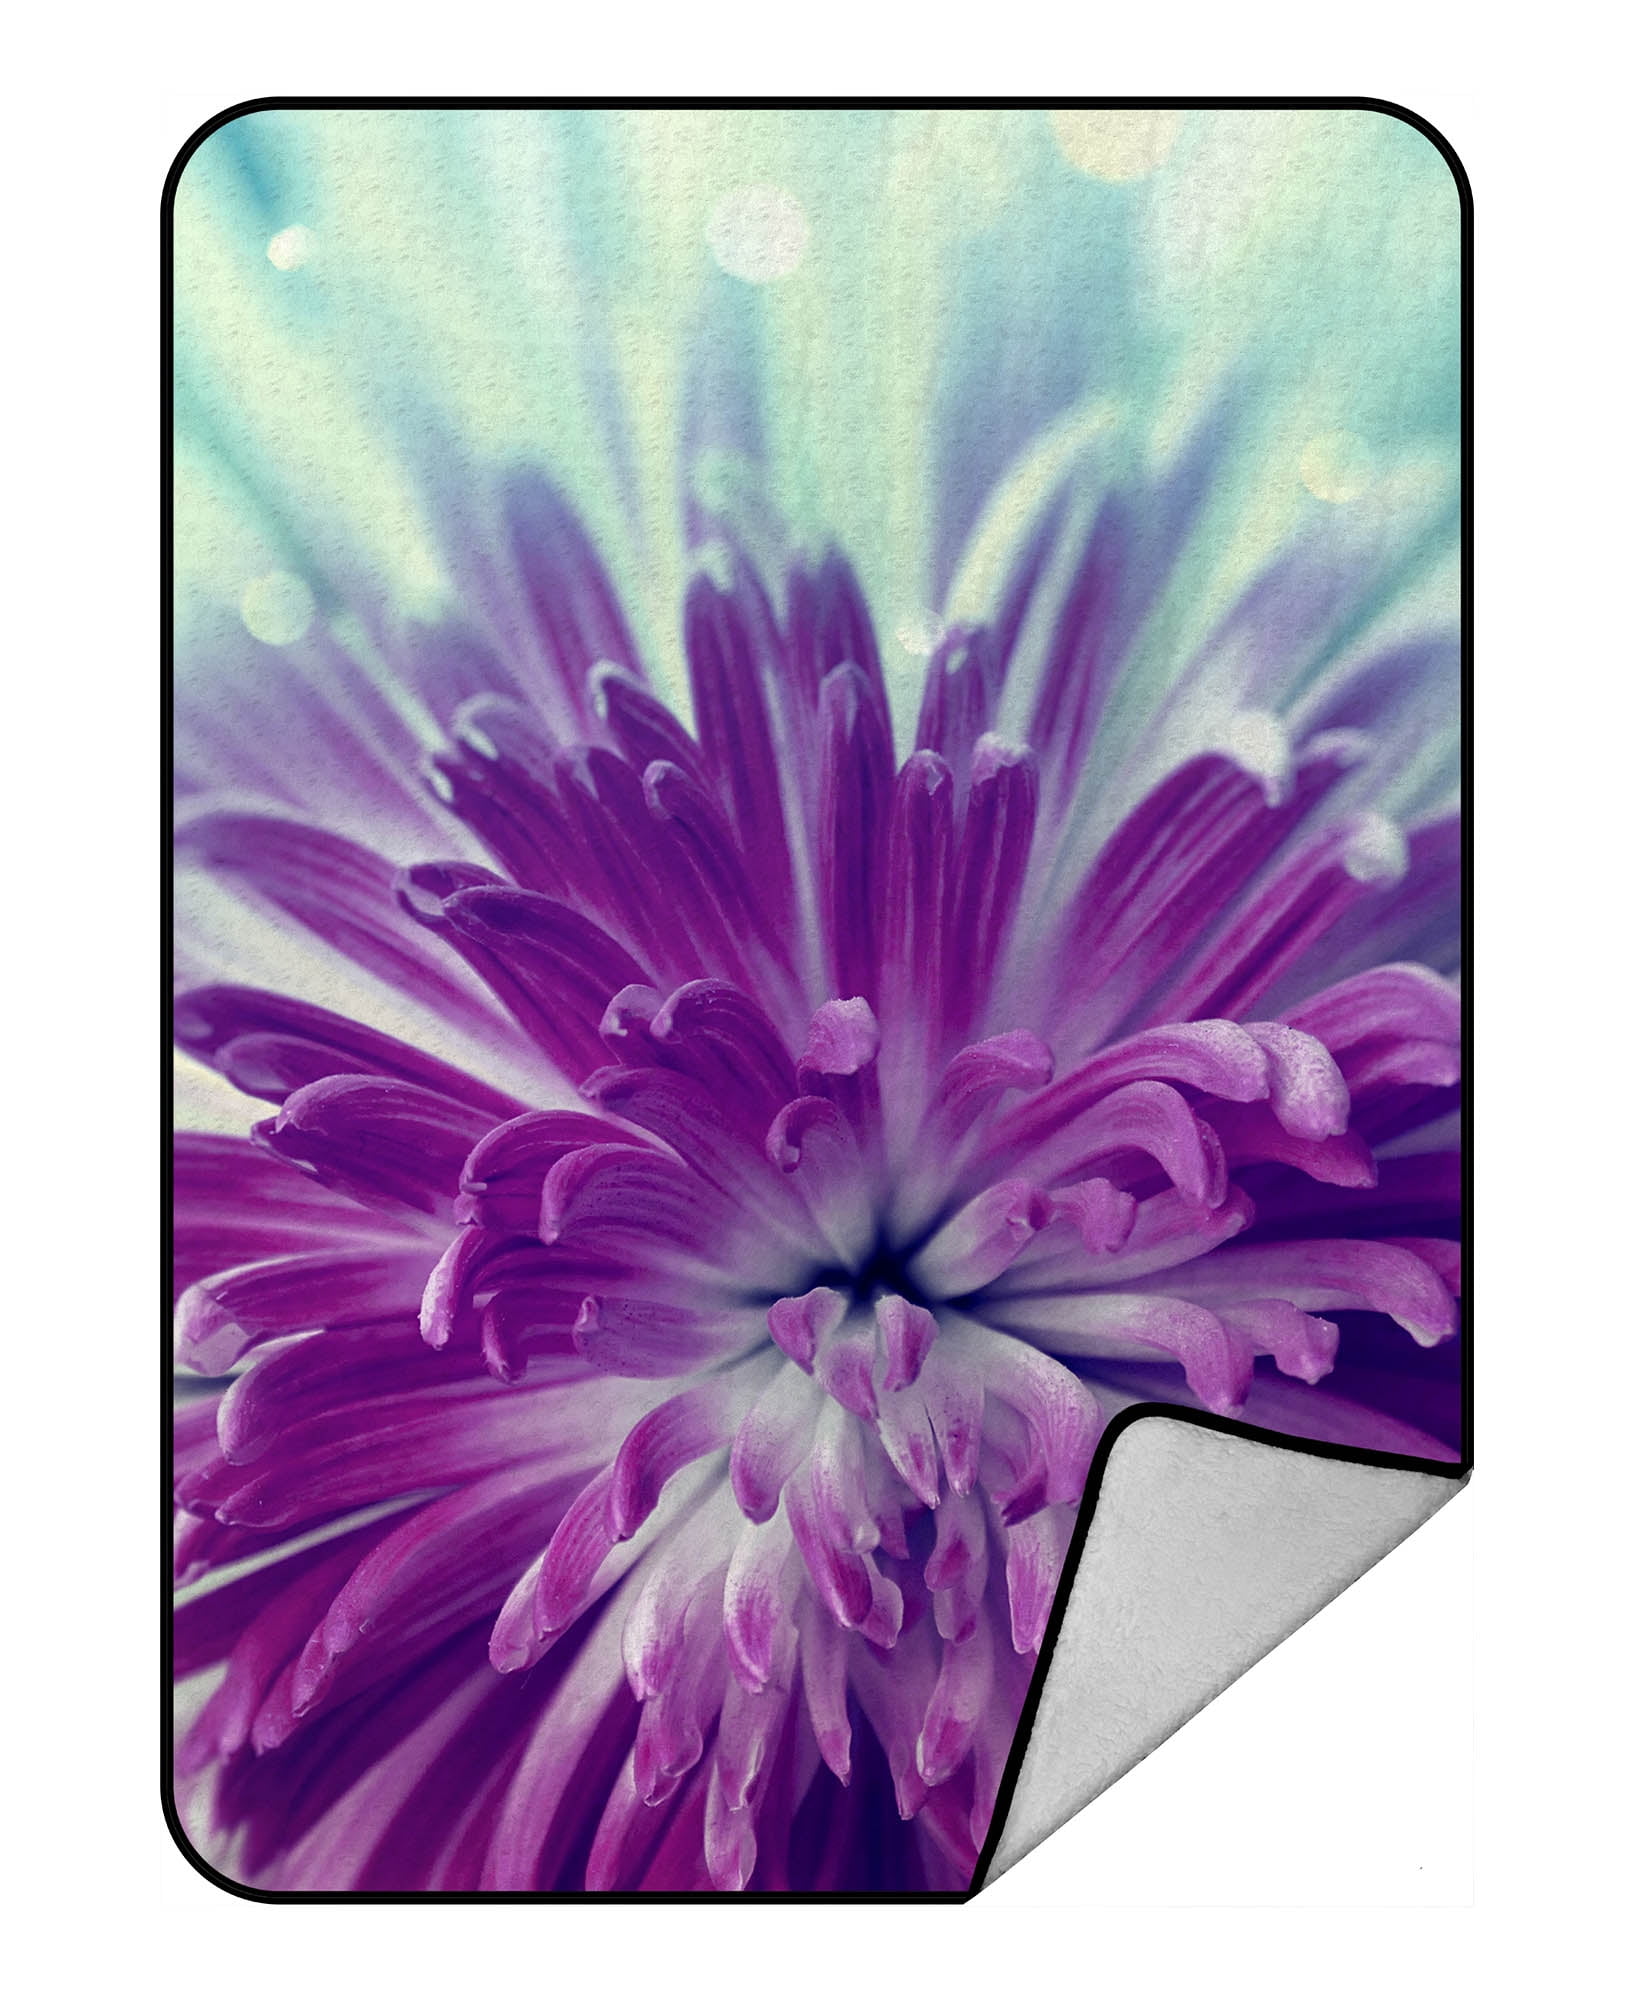 YKCG Big Blooming Flower Purple Violet Flower Blanket Crystal Velvet ...